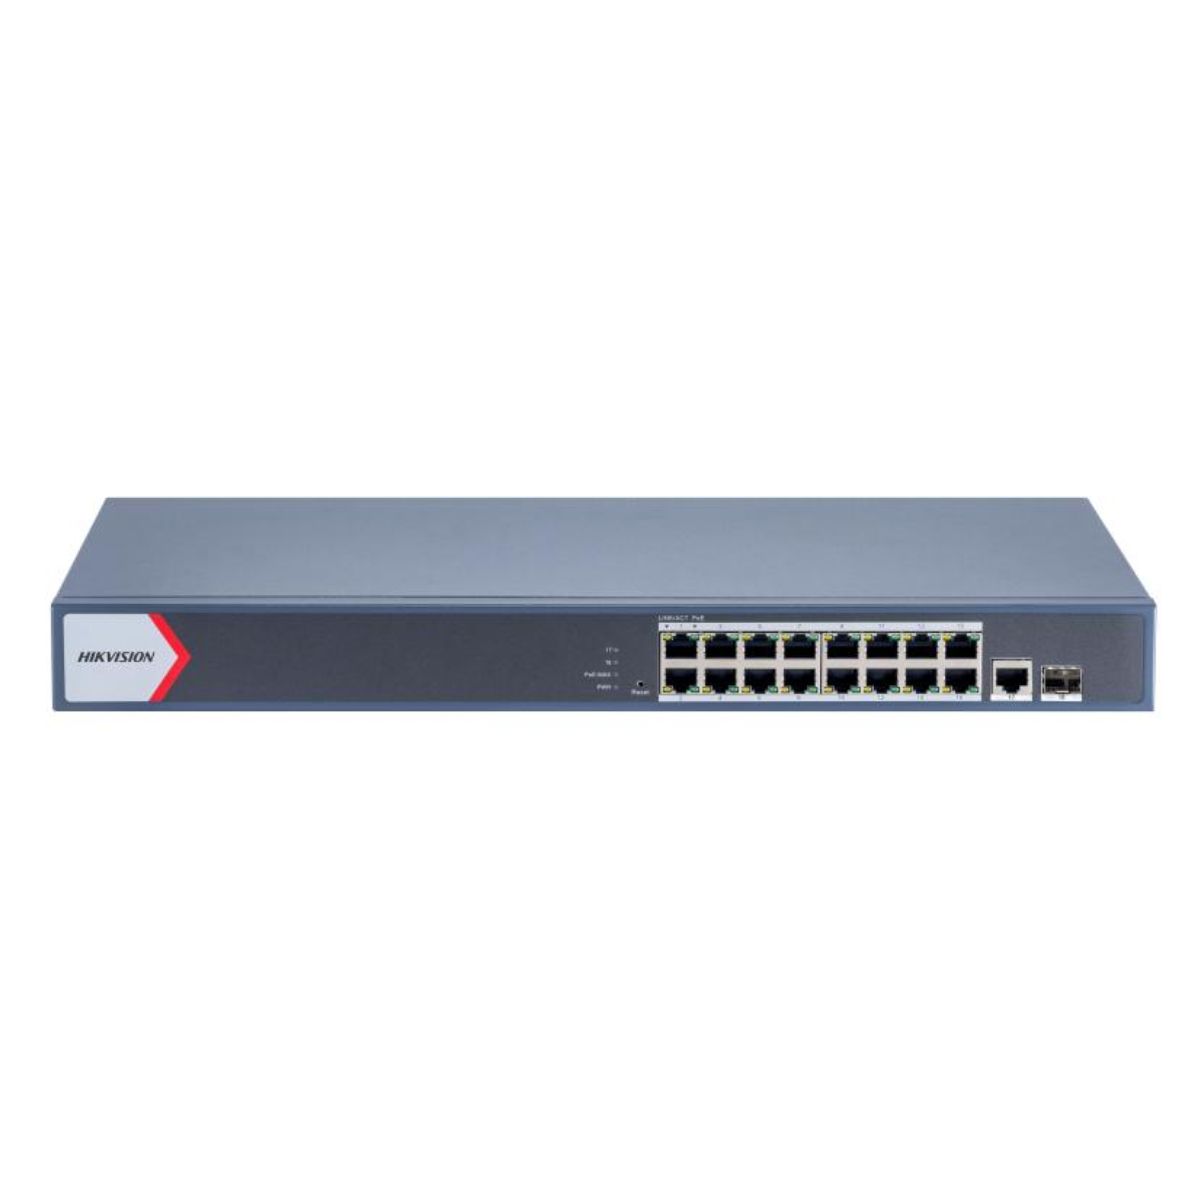 Switch mạng thông minh PoE 16 cổng Hikvision DS-3E1518P-EI/M công suất 130W, hỗ trợ quản lý sơ đồ mạng, cảnh báo giám sát